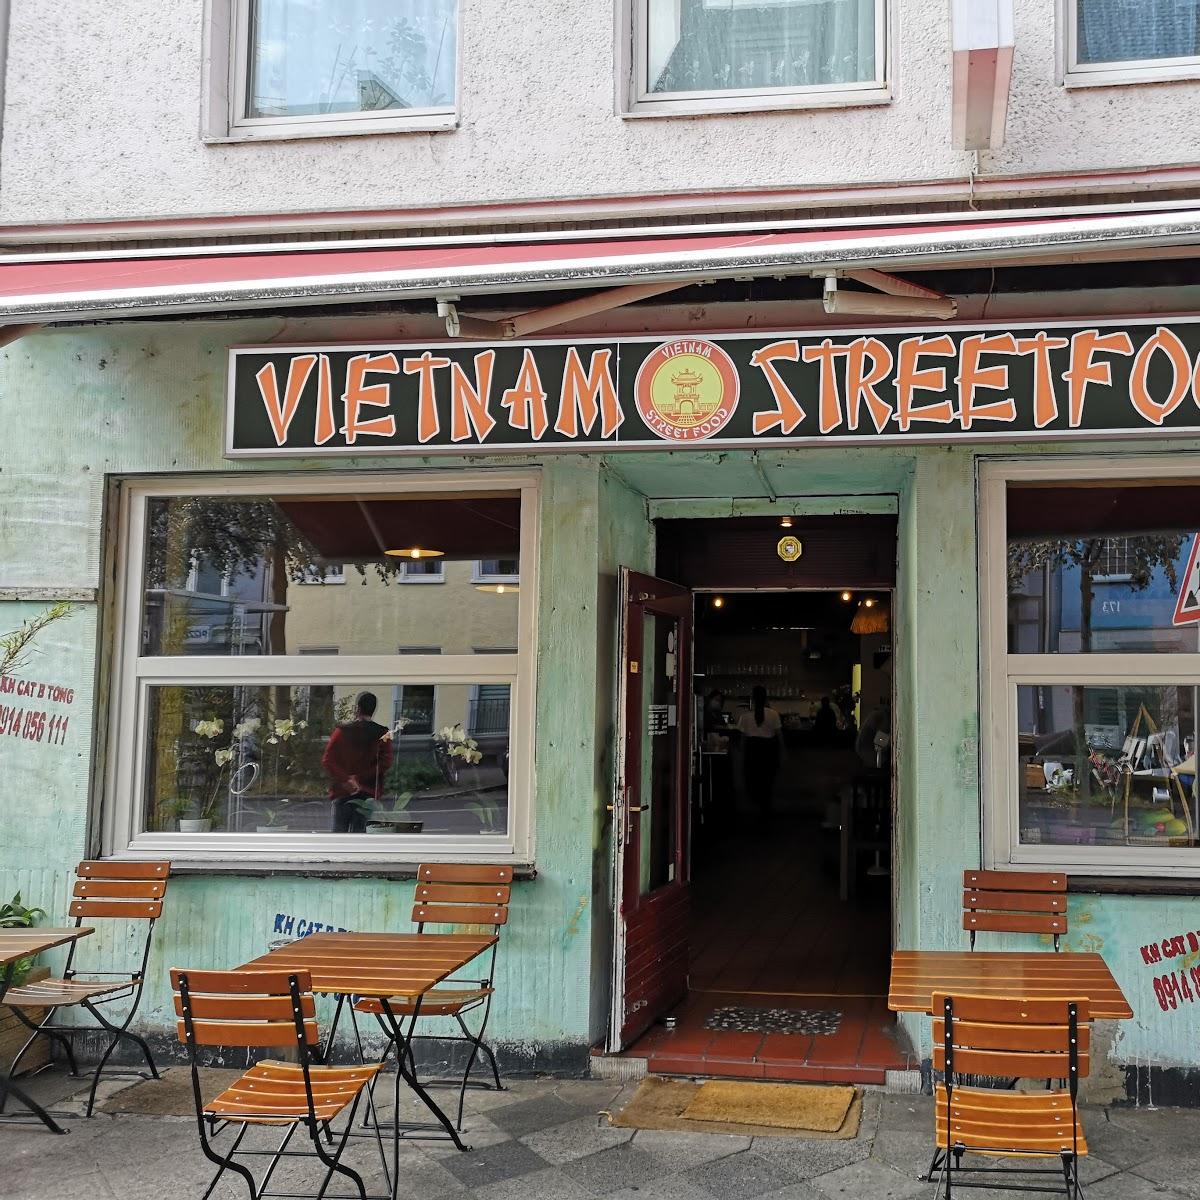 Restaurant "Vietnam Street Food" in Düsseldorf